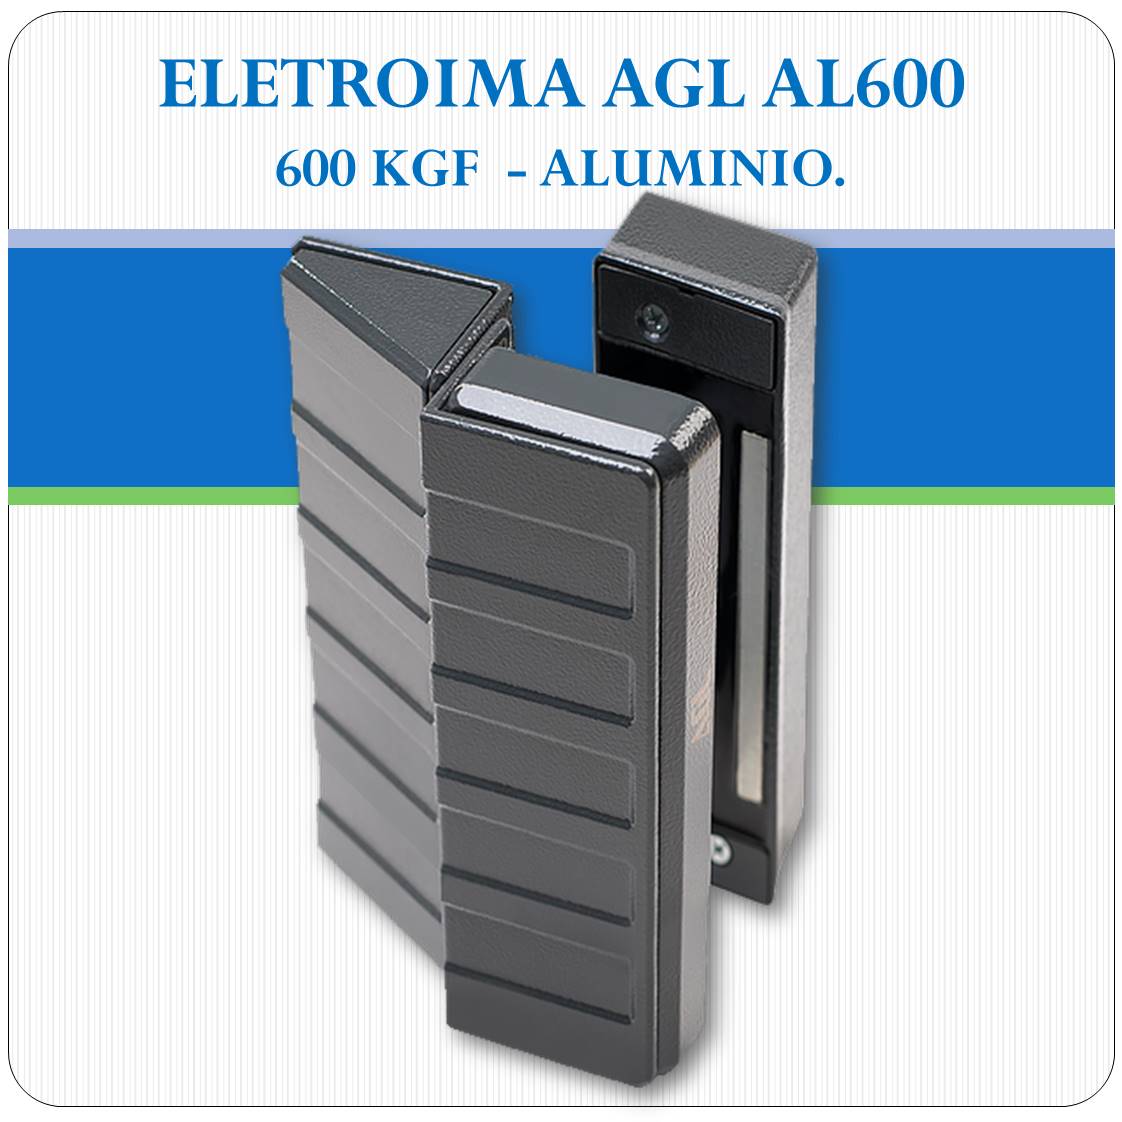 Fechadura Eletroimã AL 600 - 600Kgf (AGL)